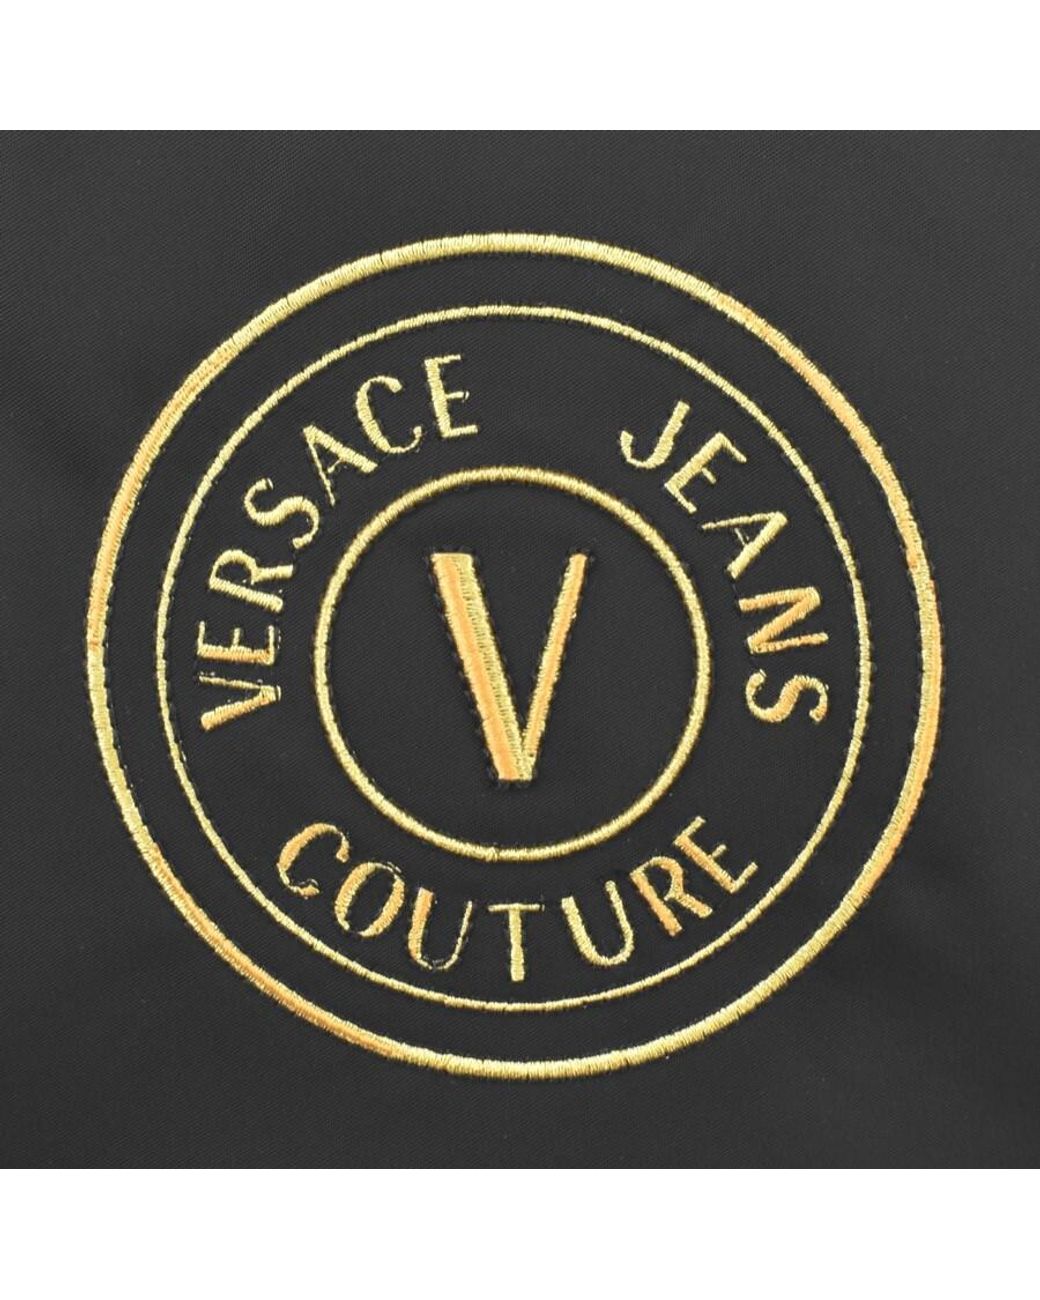 Versace Jeans Couture Couture Range V Emblem Bag in Black for Men